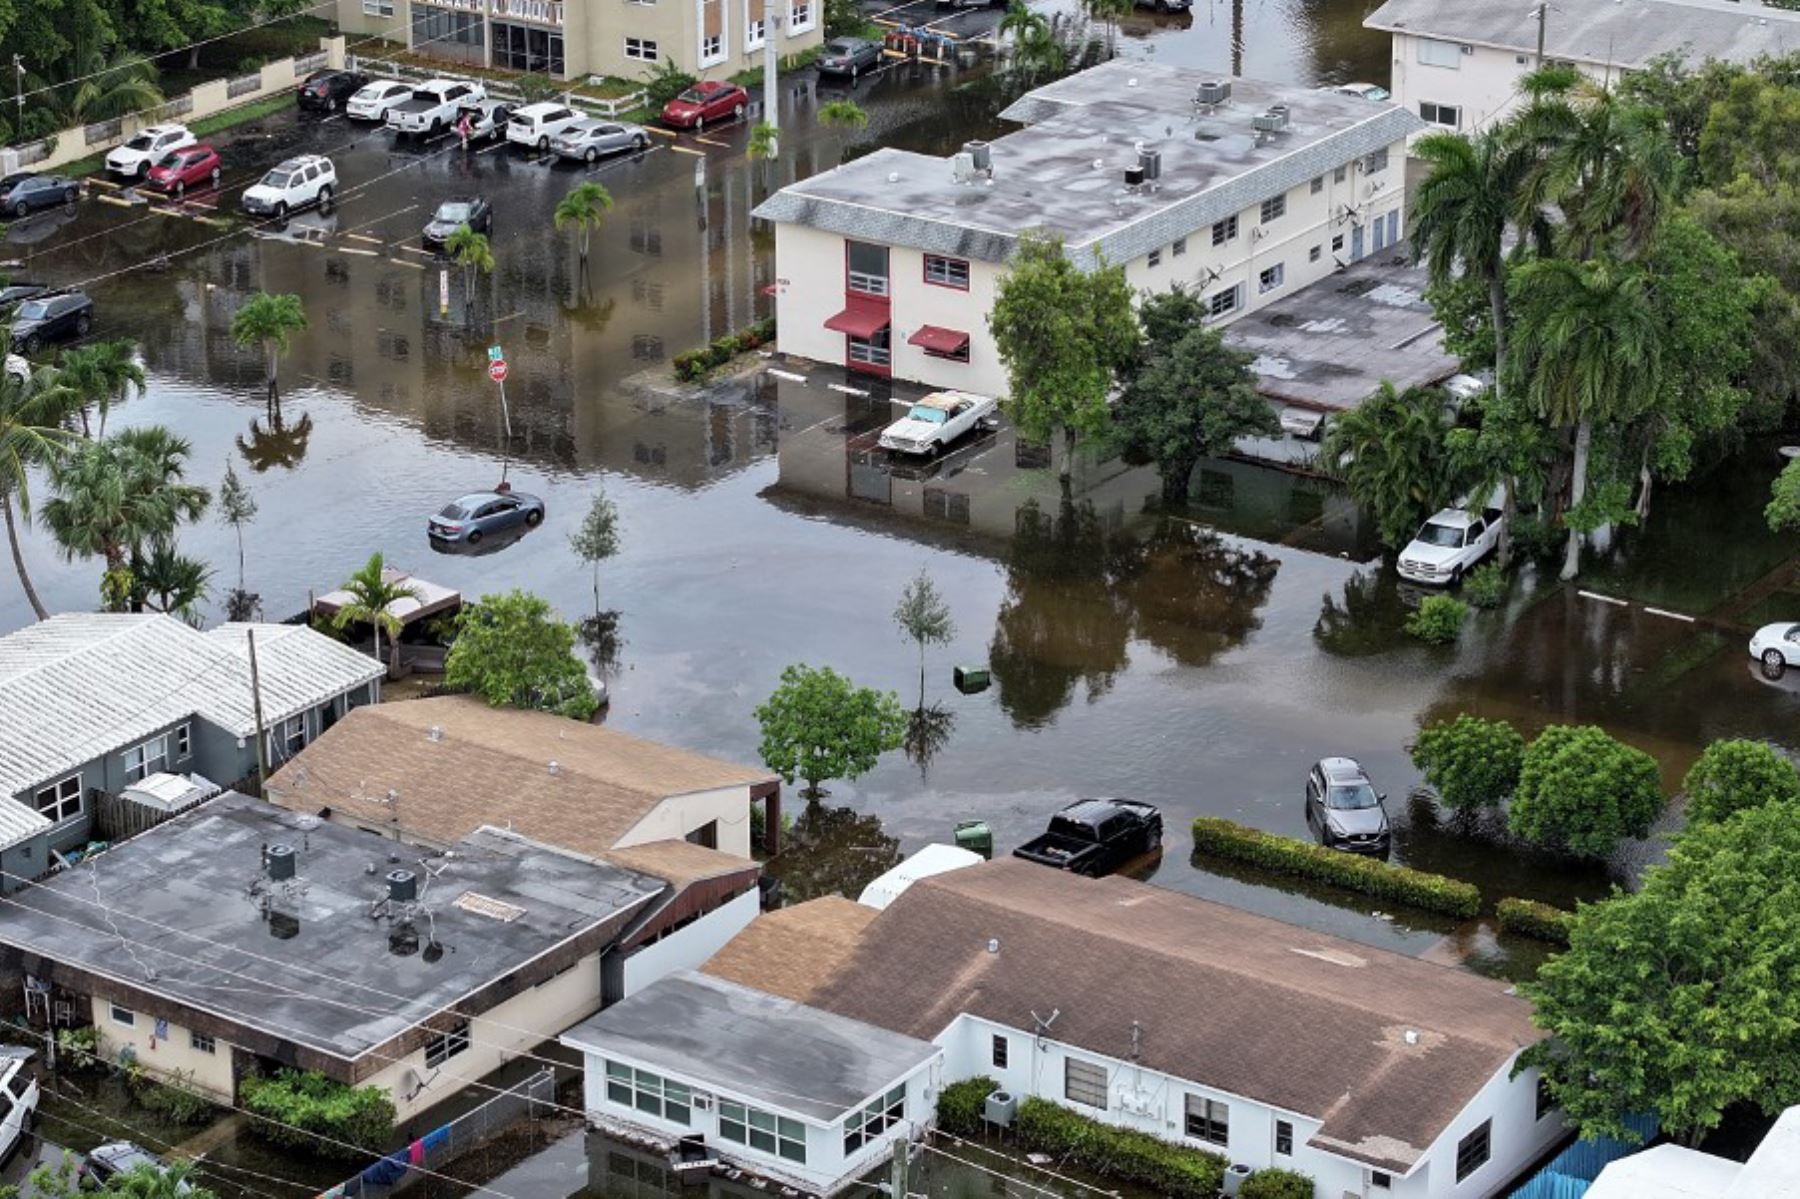 Las precipitaciones dejaron más de 635 mm de agua en 24 horas en esa ciudad de 180 000 habitantes al norte de Miami, según un informe preliminar del servicio meteorológico.